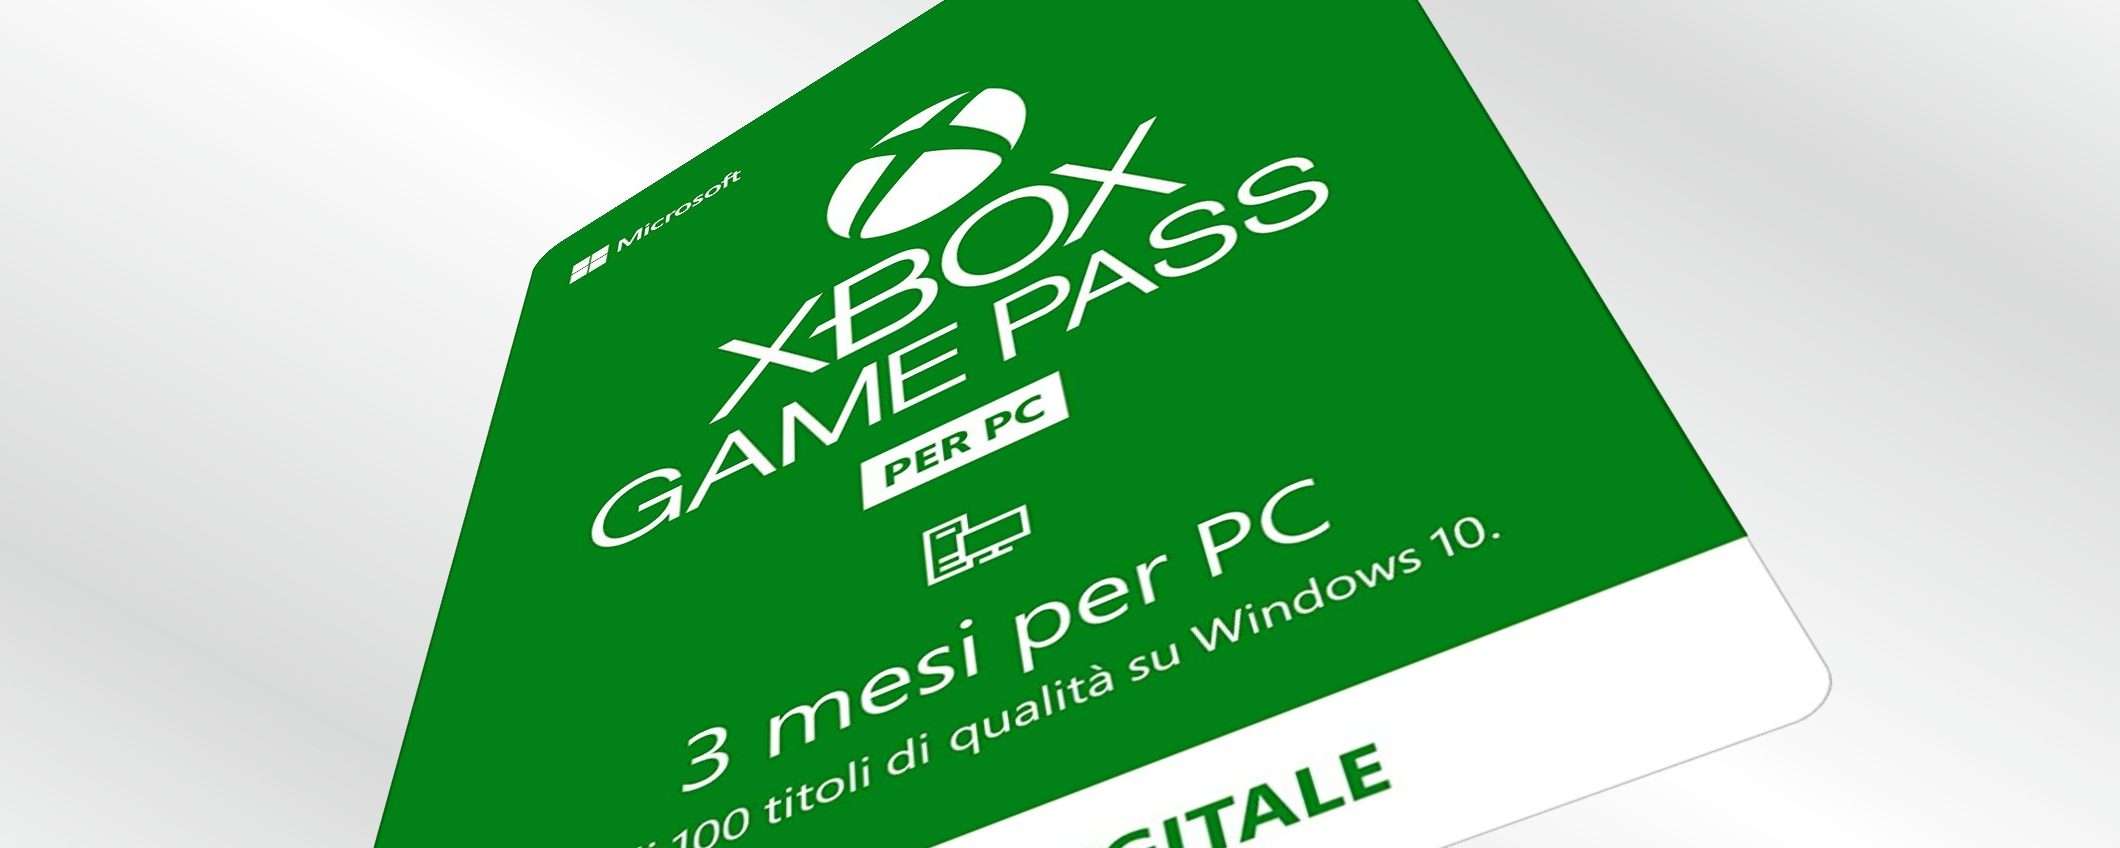 Xbox Game Pass di 3 mesi e 1 mese è in REGALO